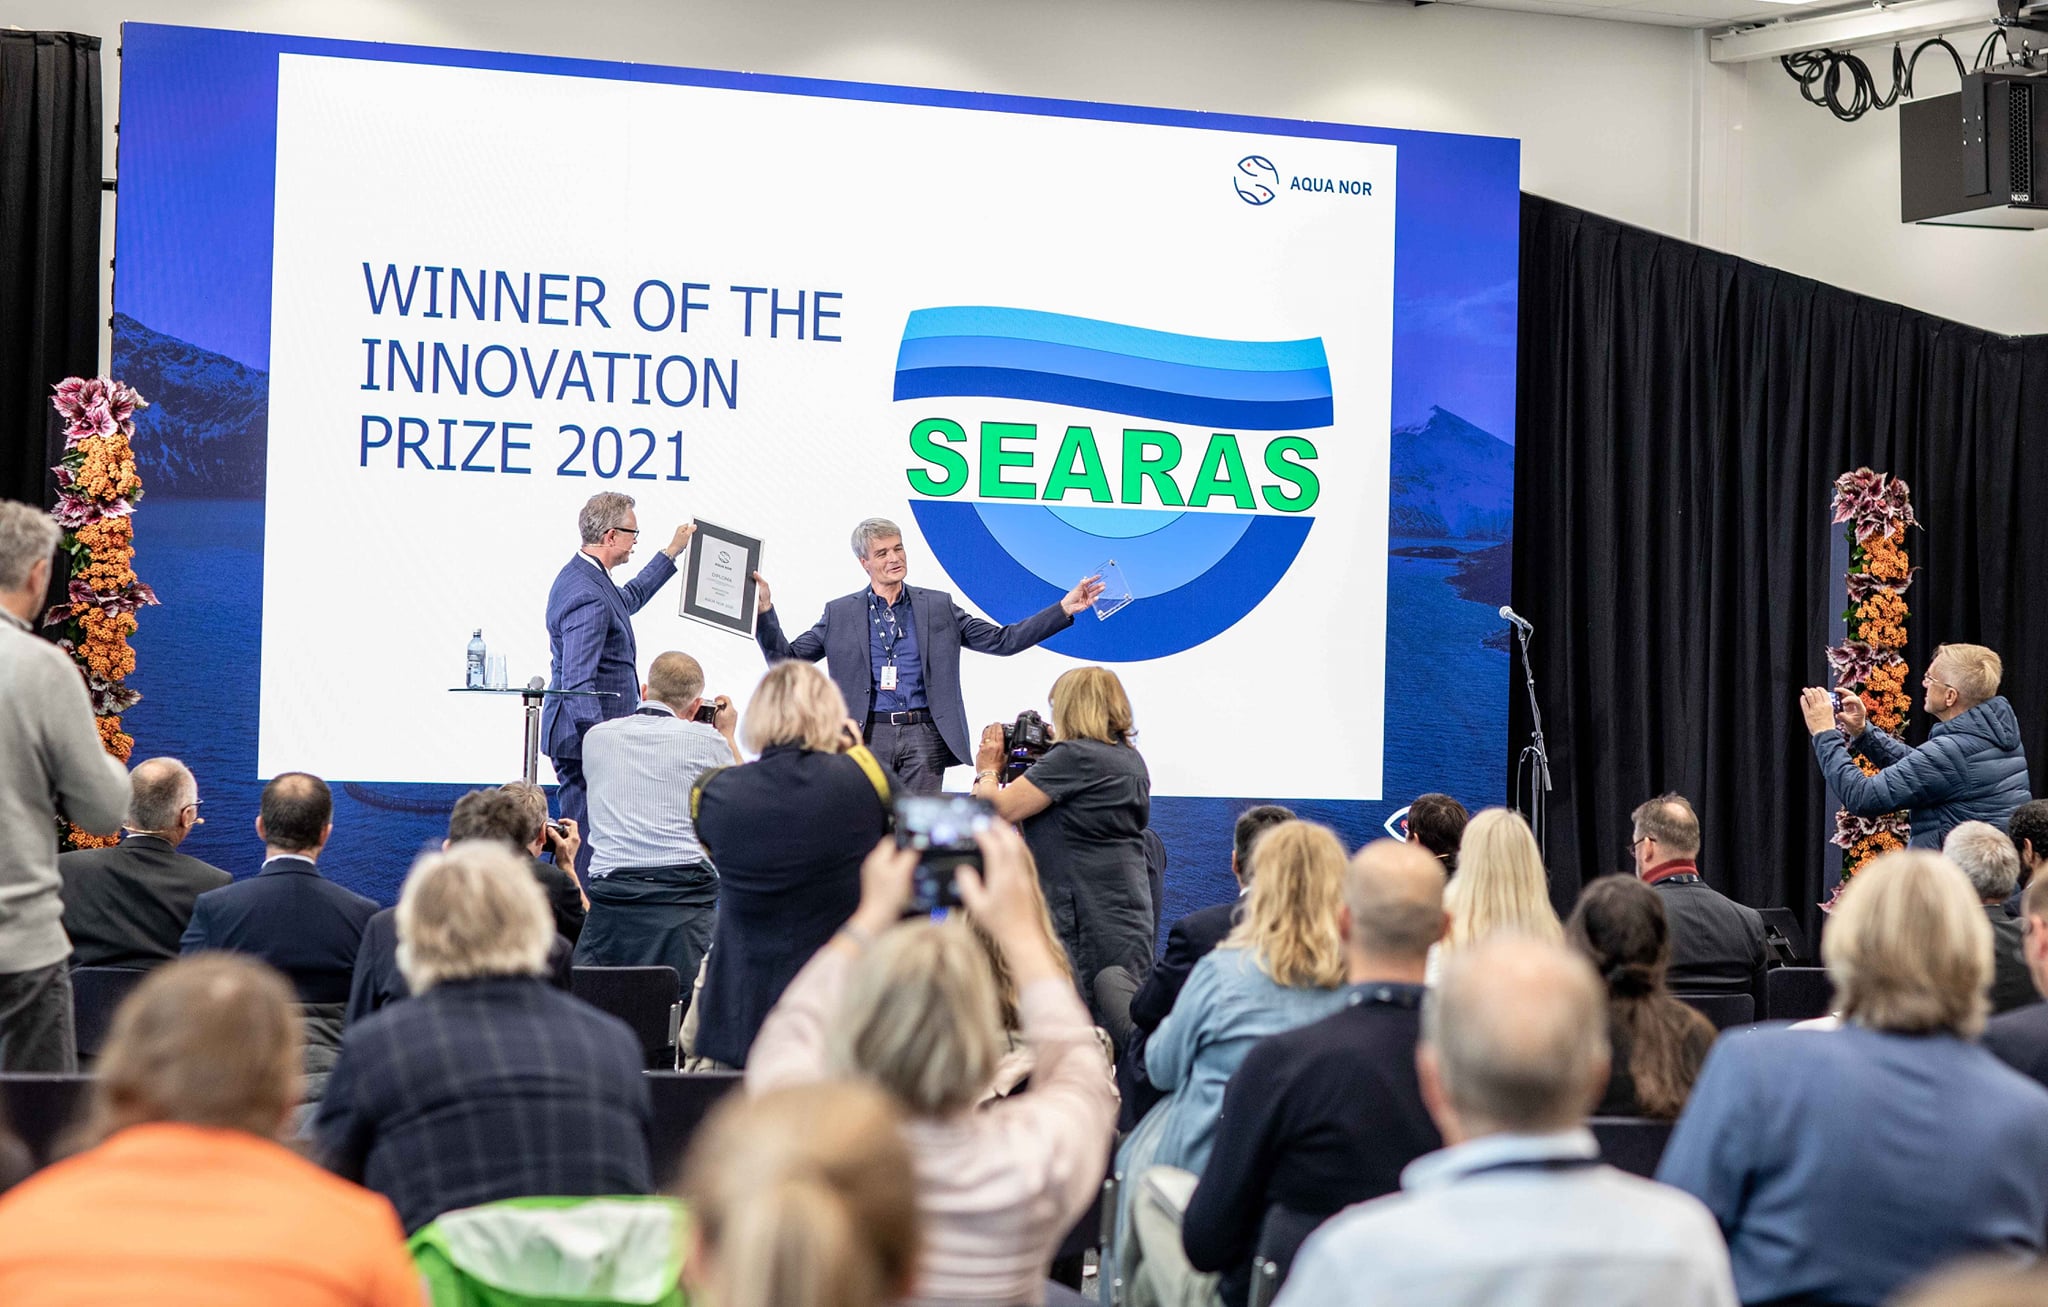 Aqua Nor: Conozca la tecnología ganadora del Premio a la Innovación